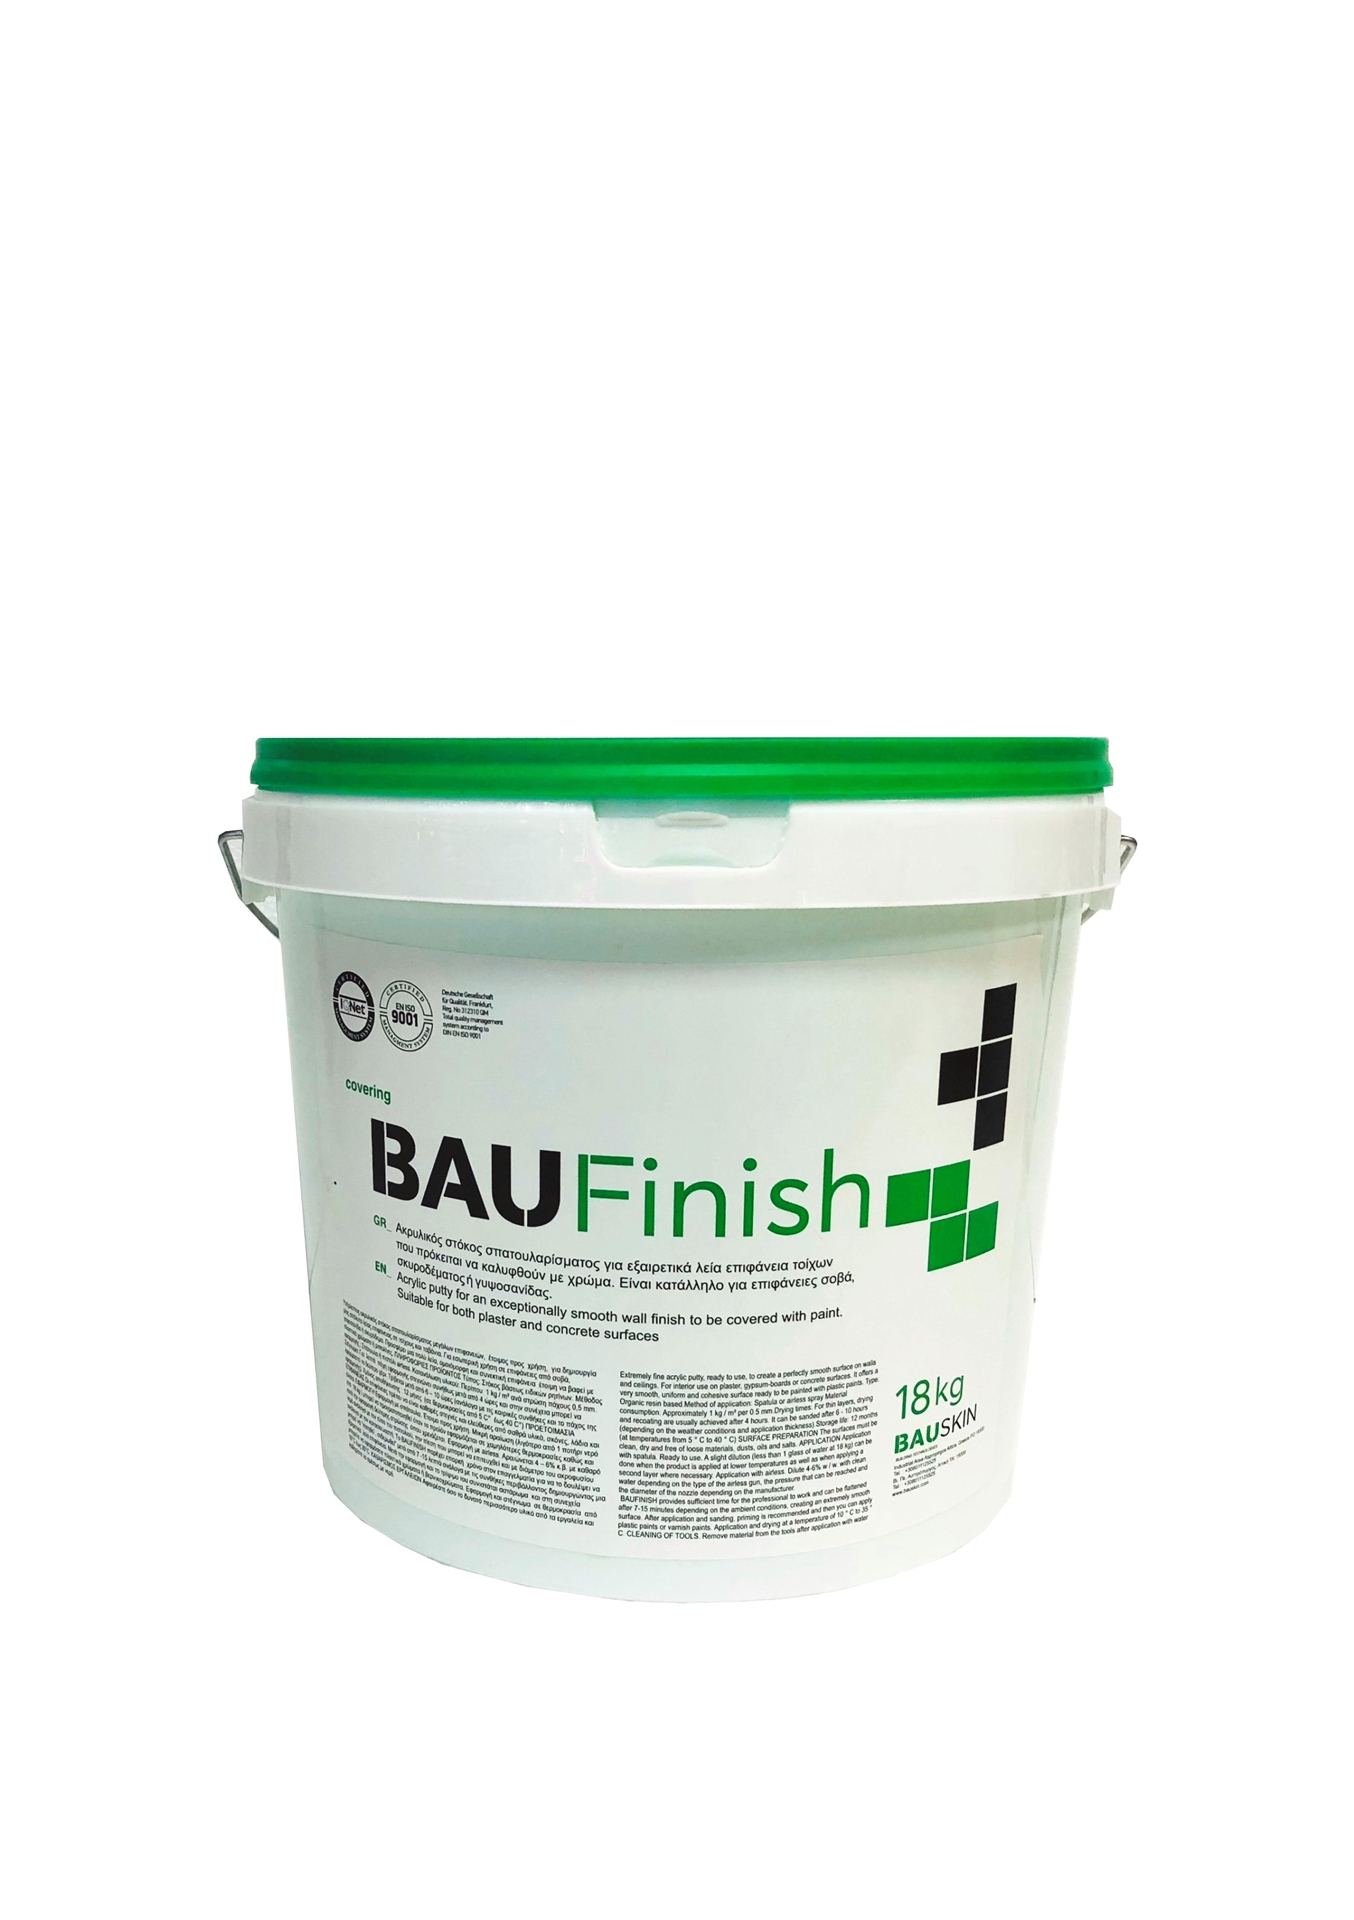 BAU FINISH, έτοιμος στόκος, λευκός, 18kg/δοχείο